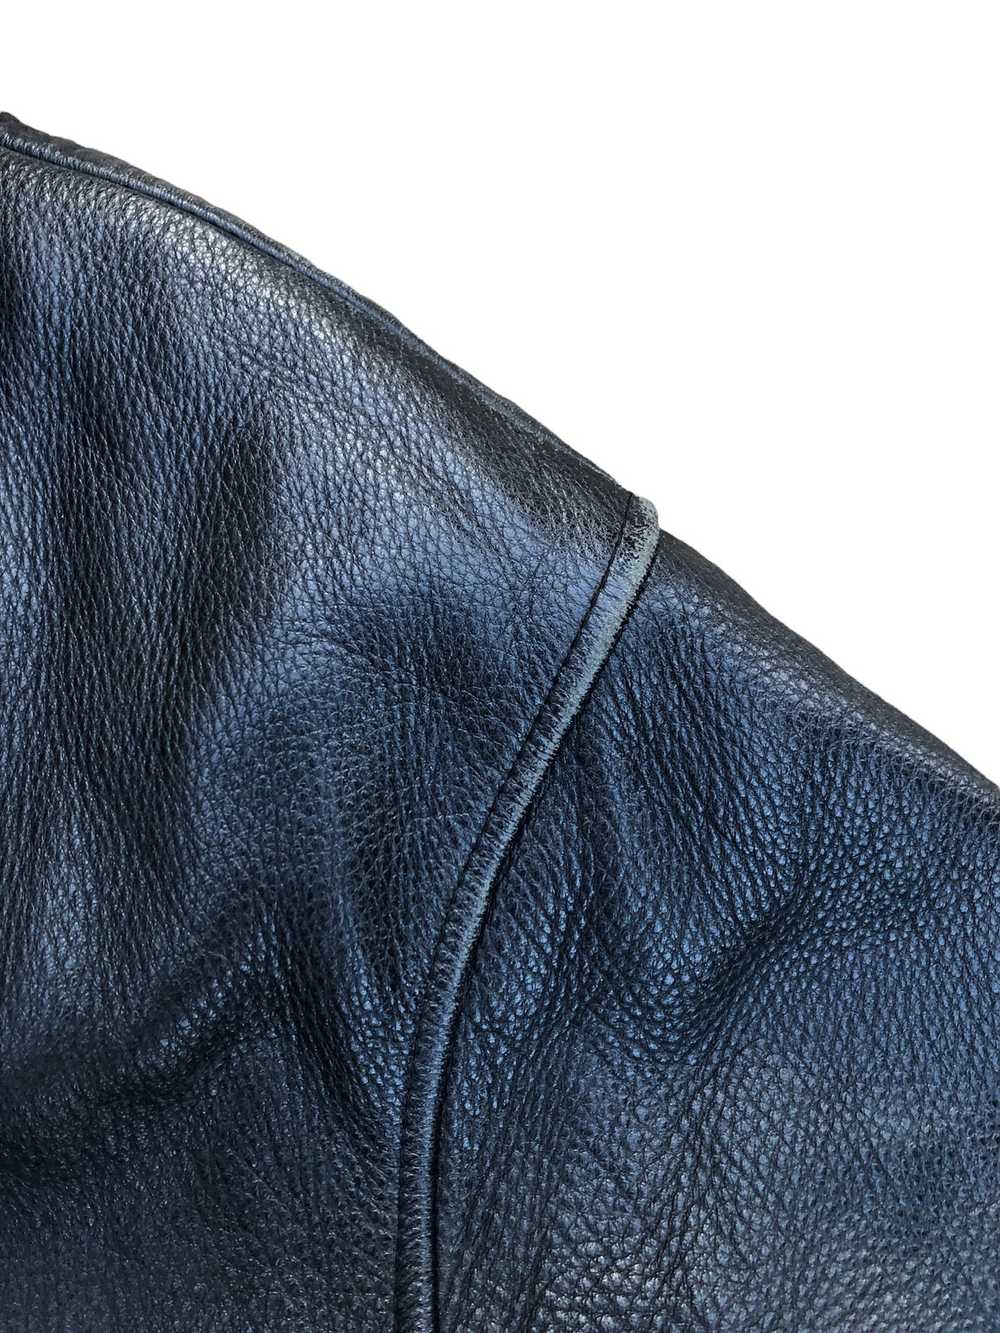 Danier × Danier  Leather × Vintage Vintage Danier… - image 11